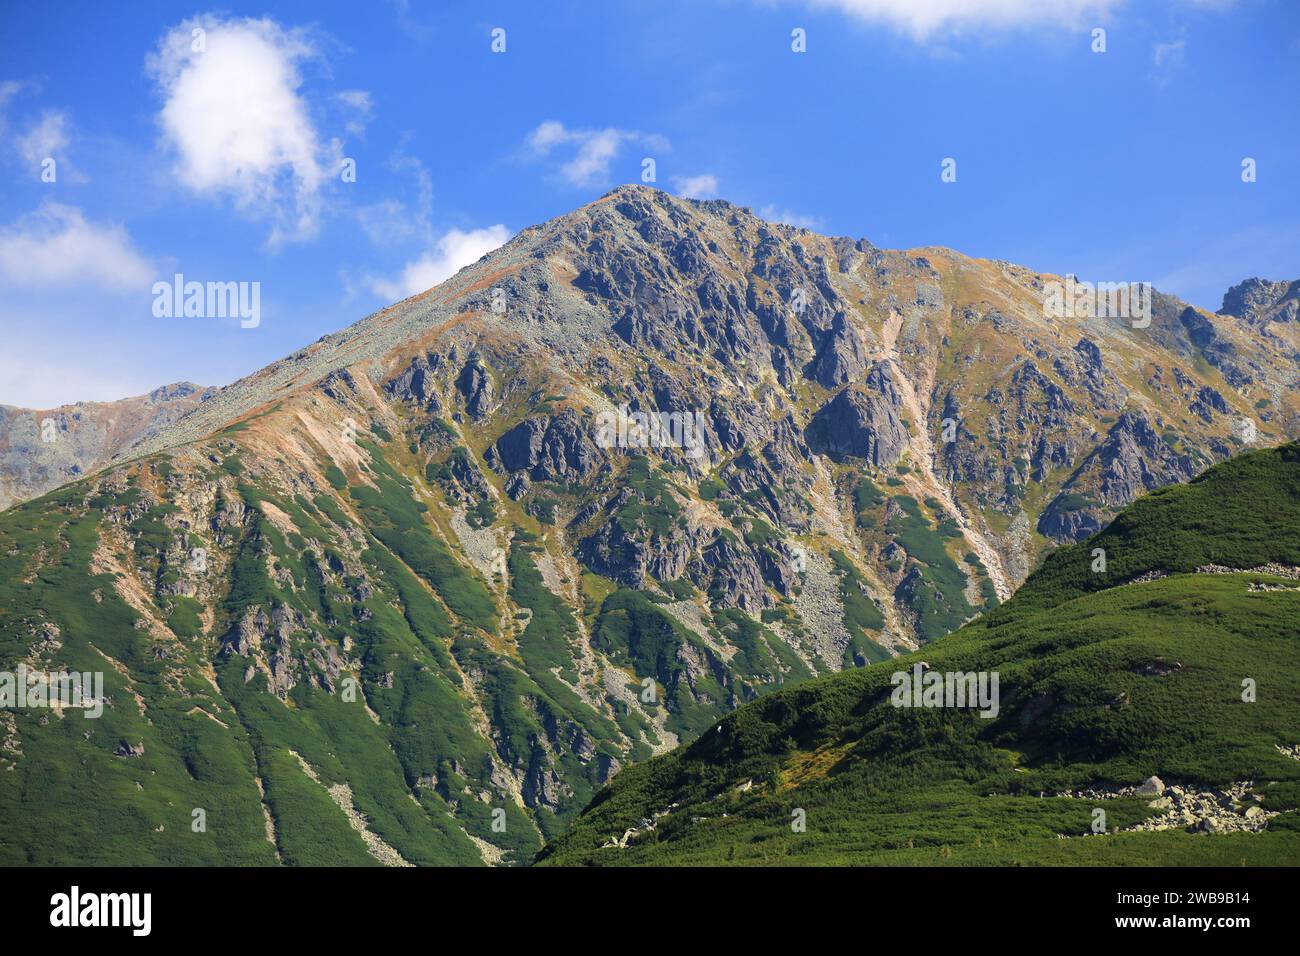 Tatra mountains in Poland. Zolta Turnia mountain peak. Stock Photo